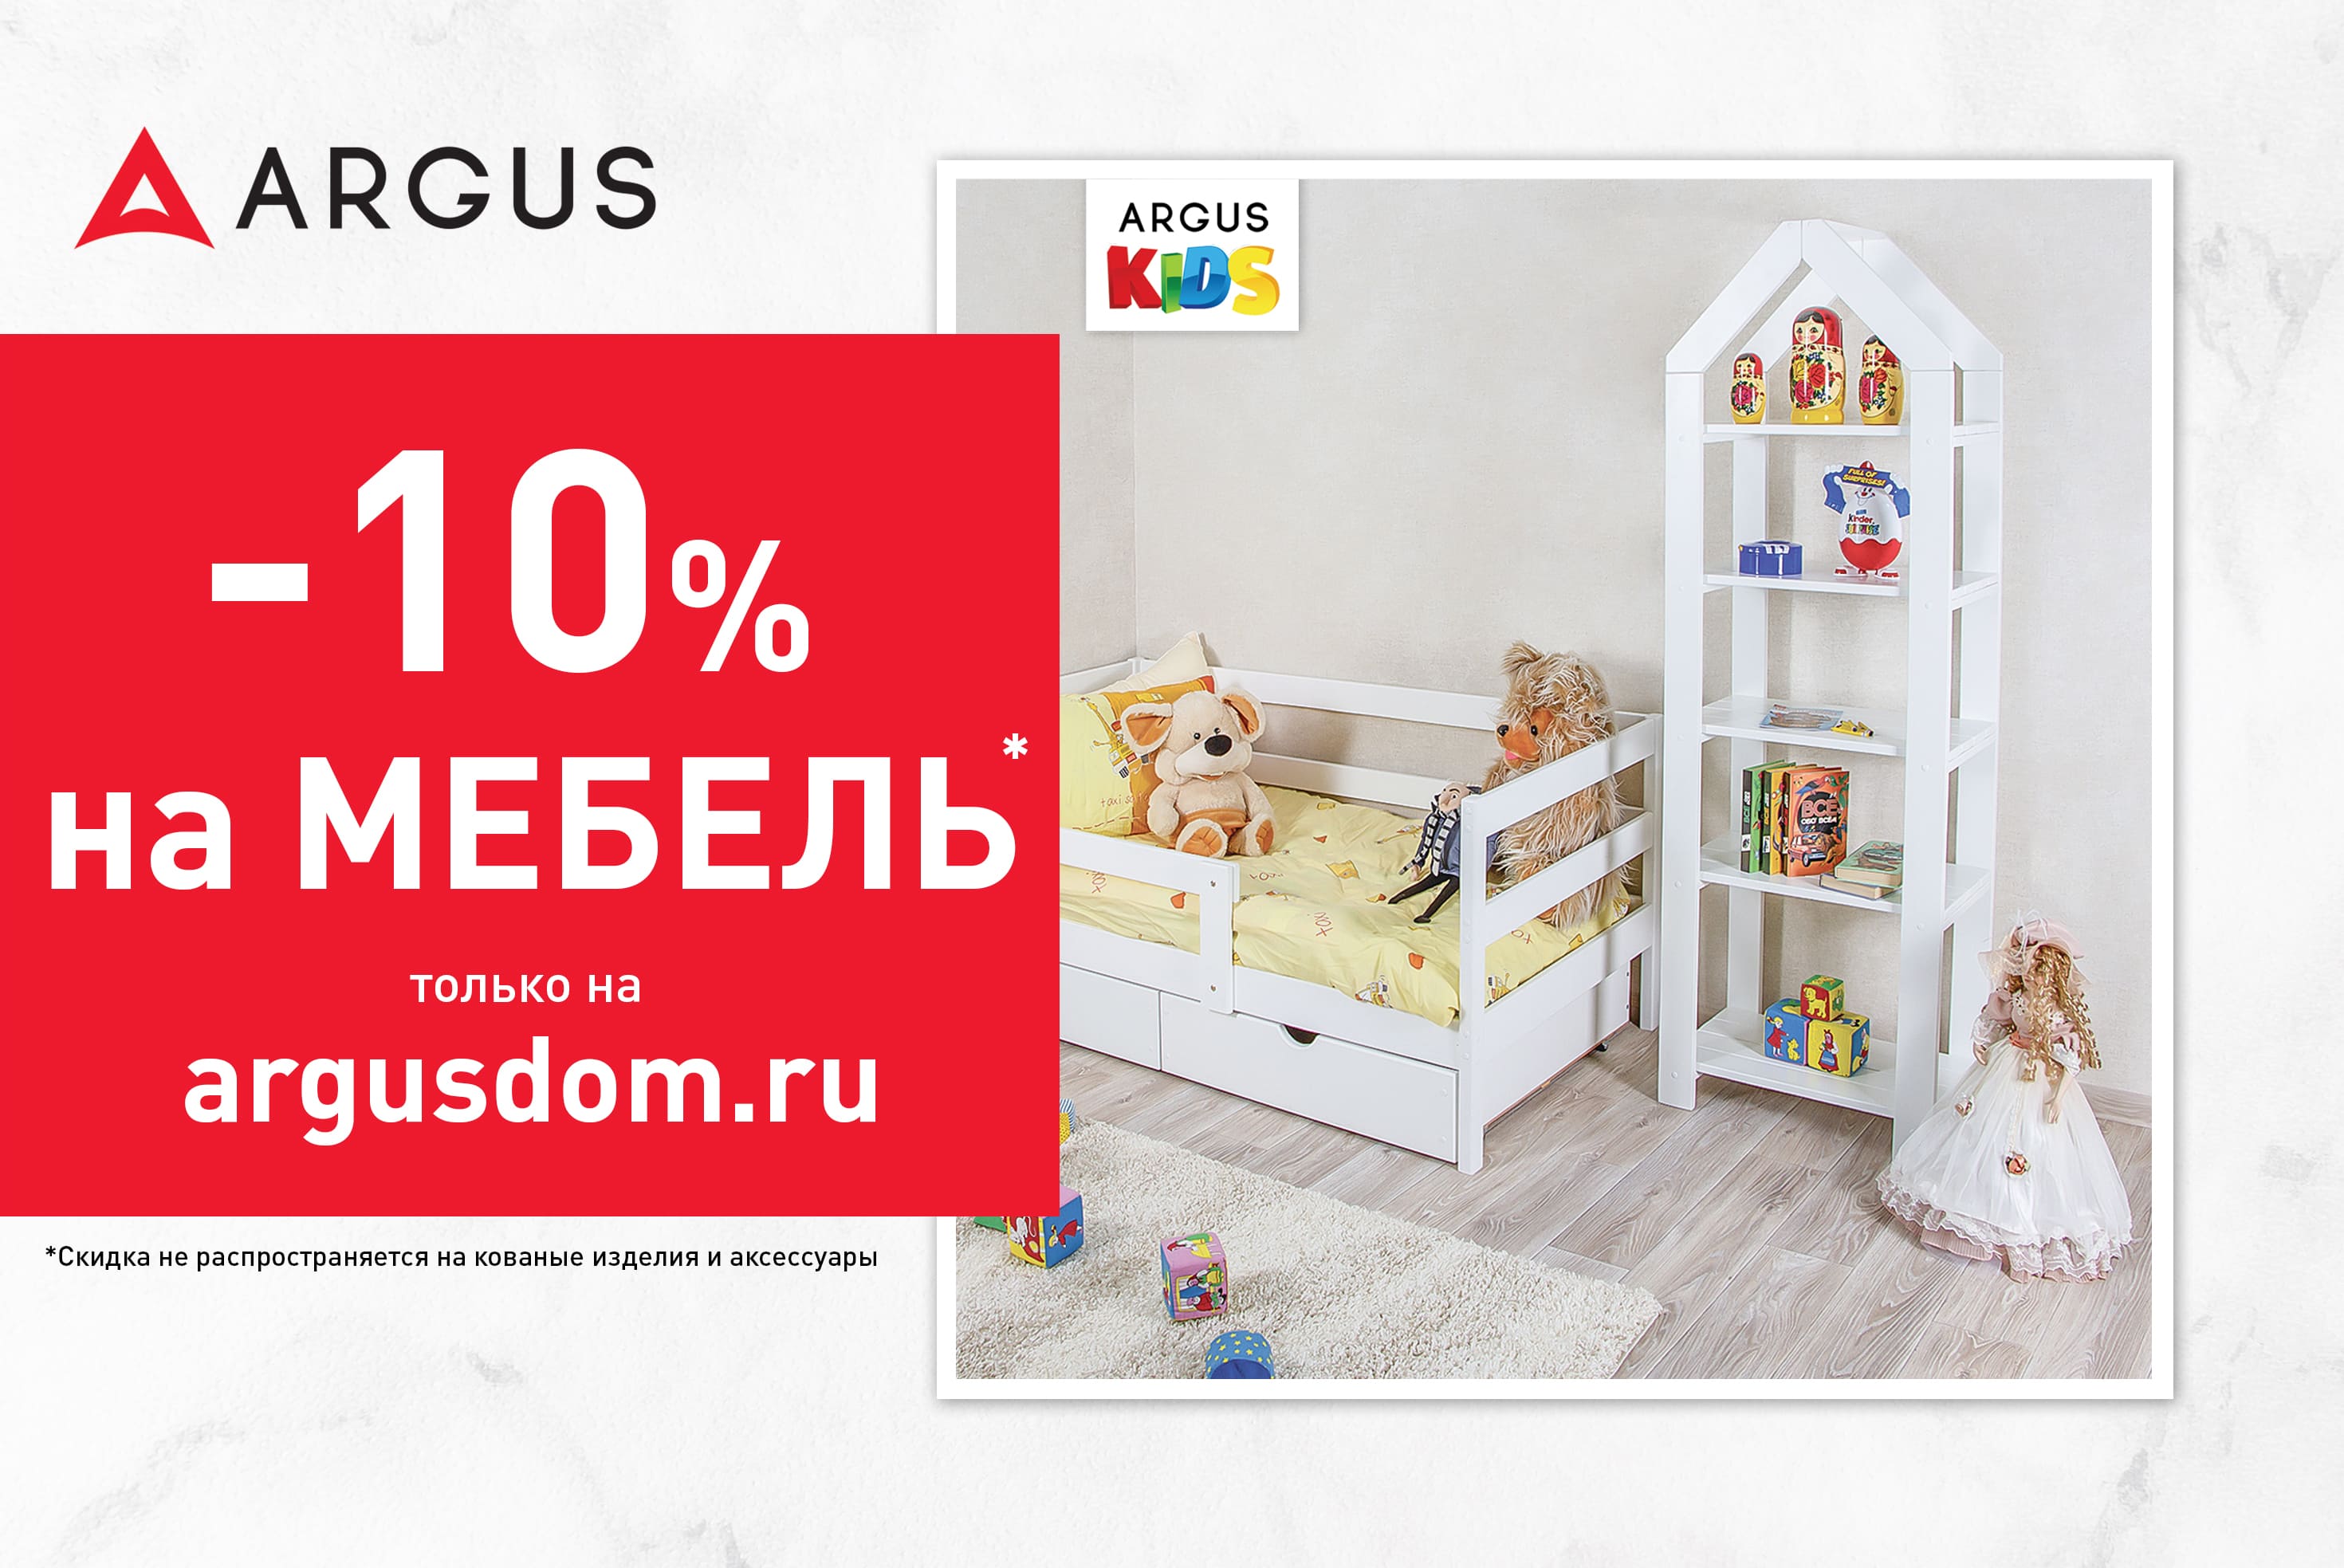 Купи выгодно в в argusdom.ru!